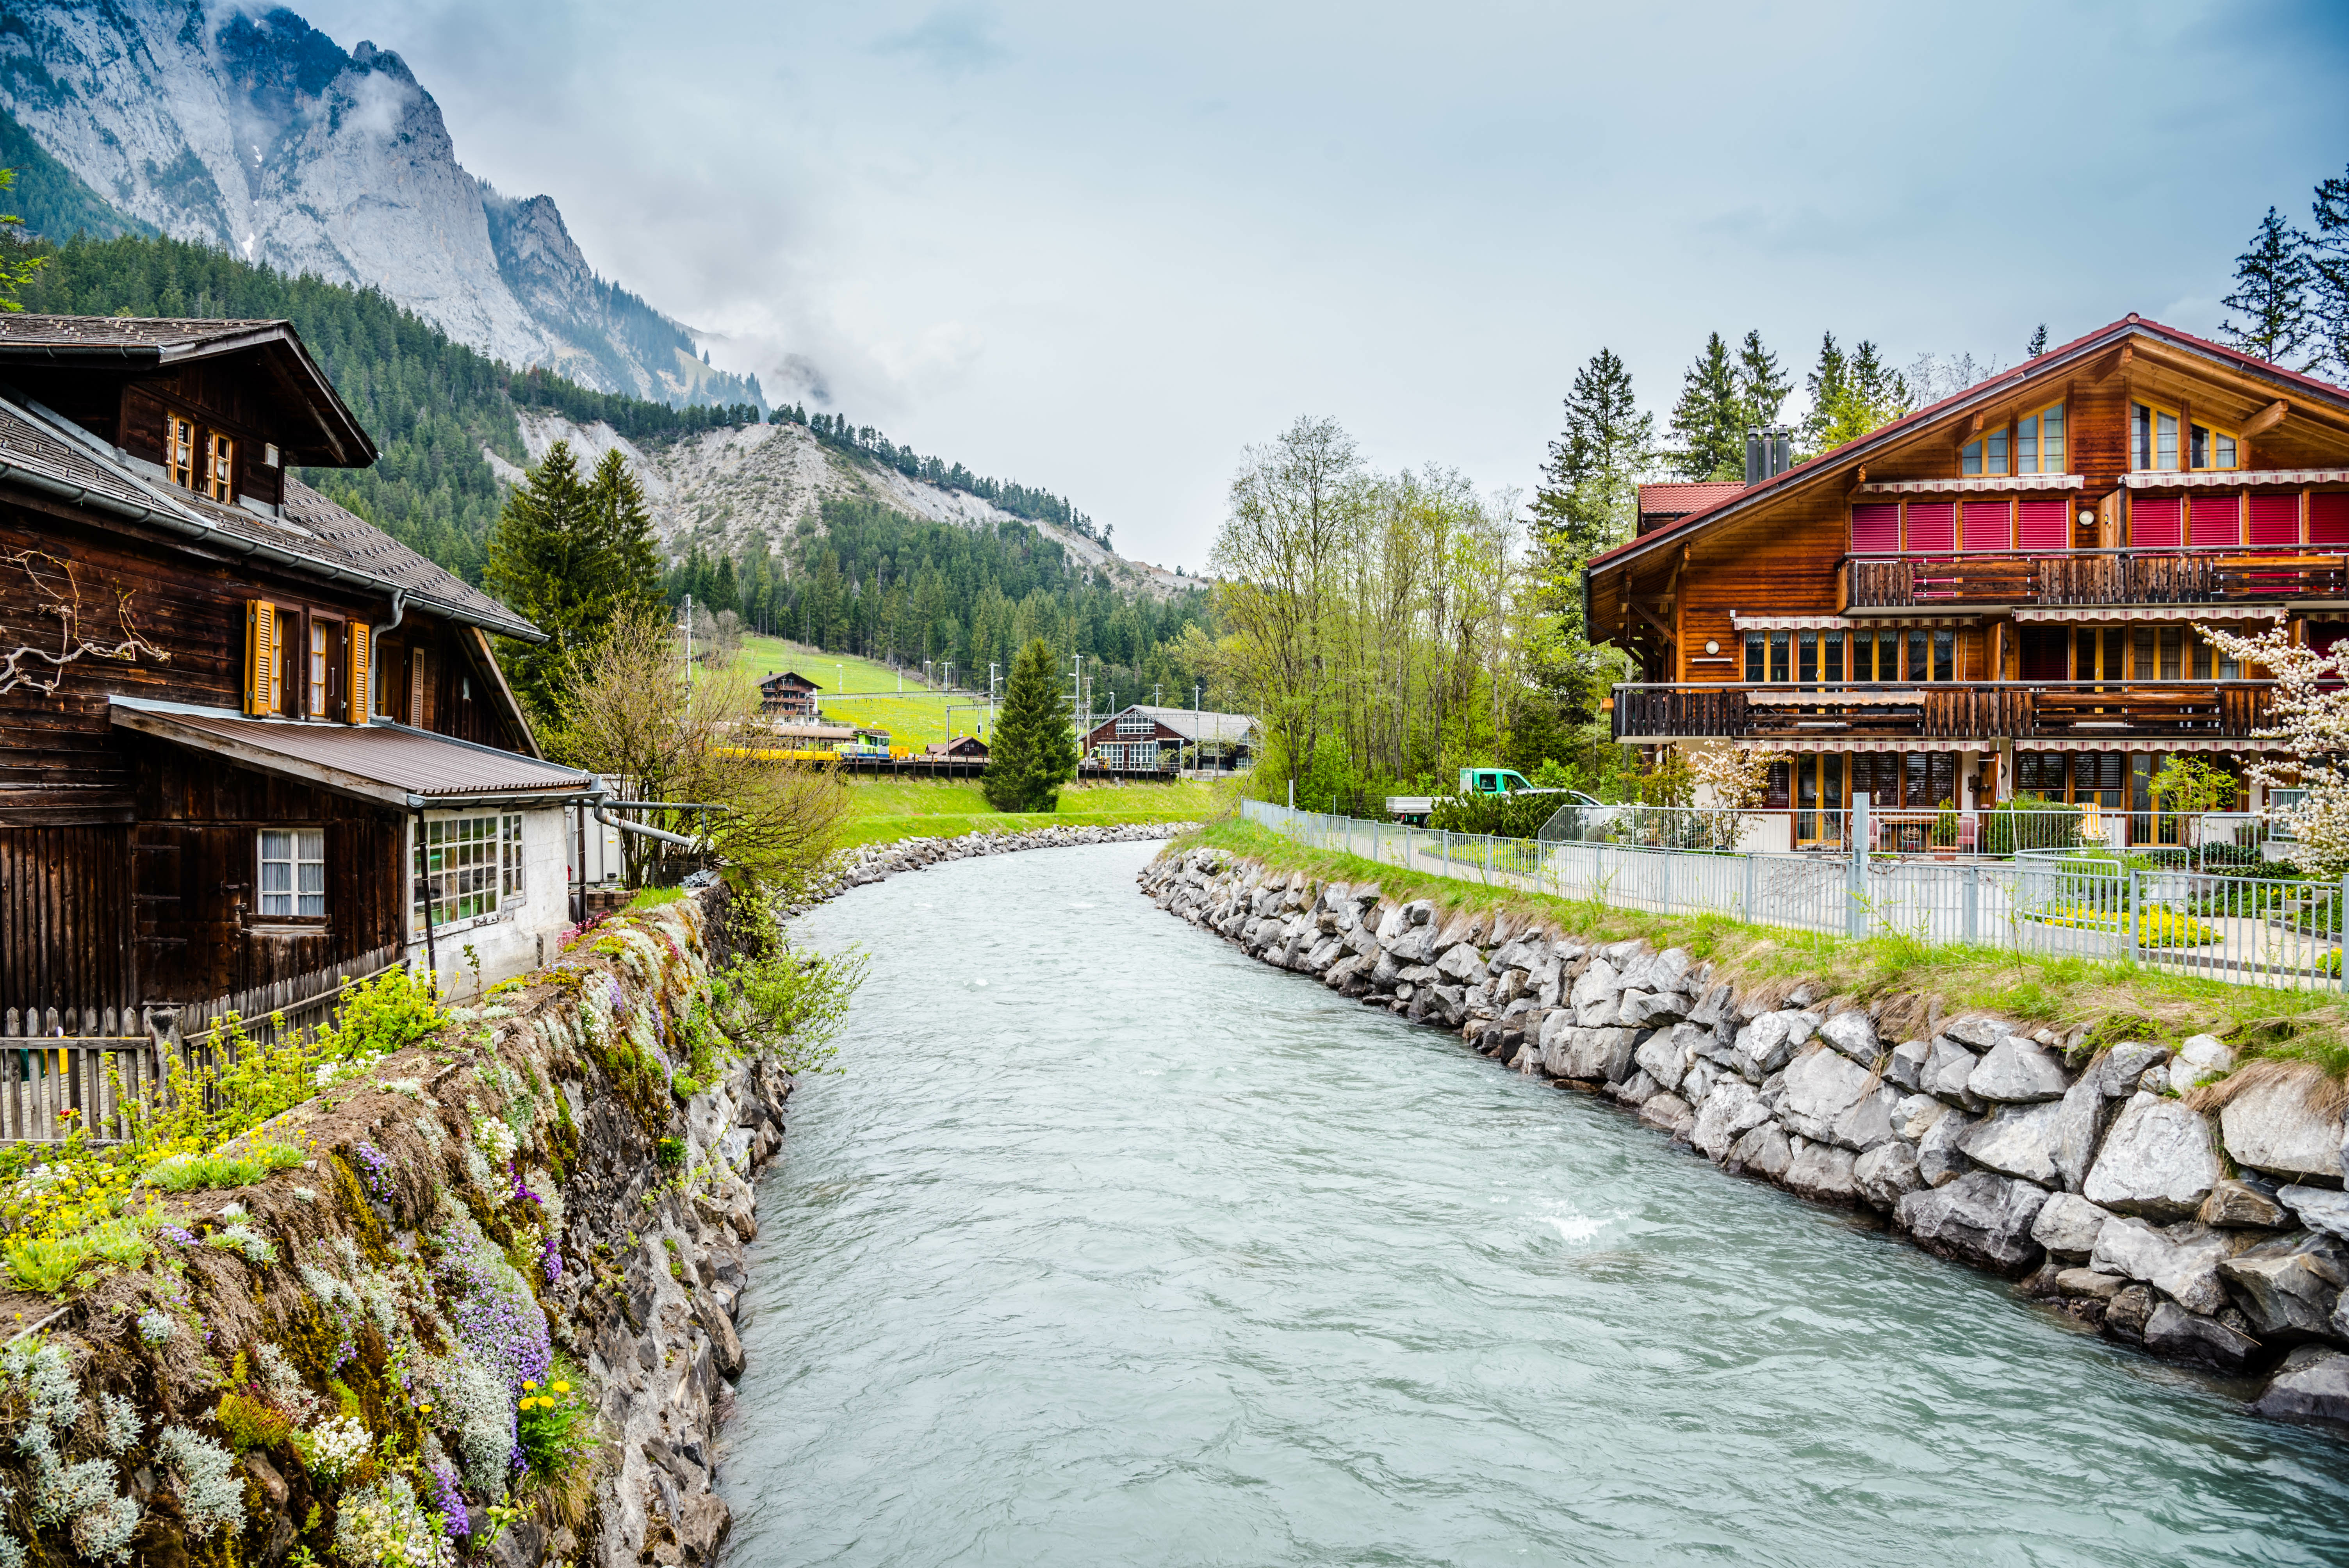 Switzerland's Alpine Majesty